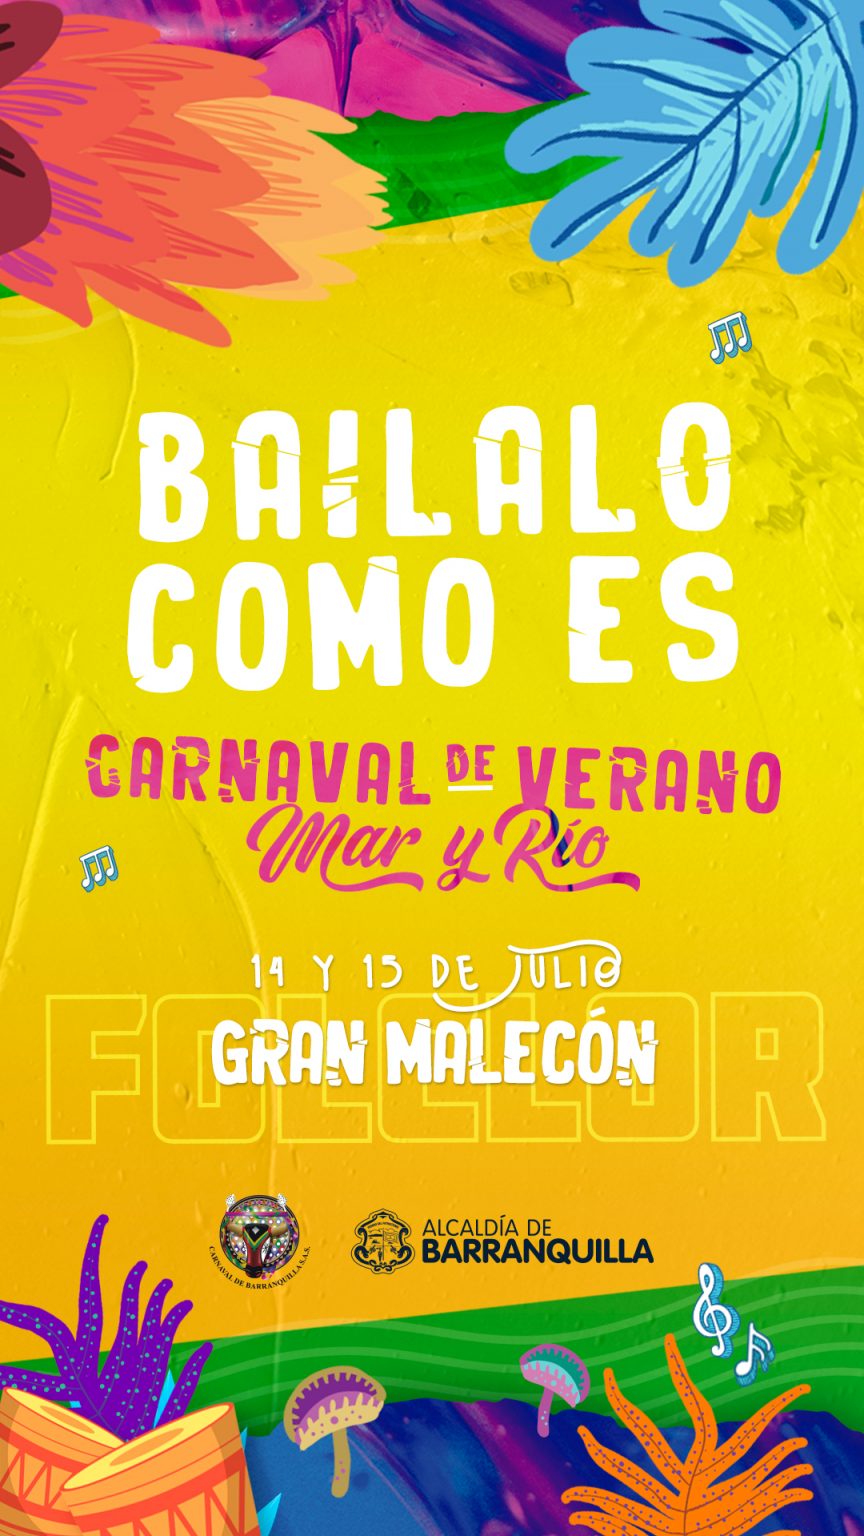 Carnaval de Verano este 14 y 15 de julio.